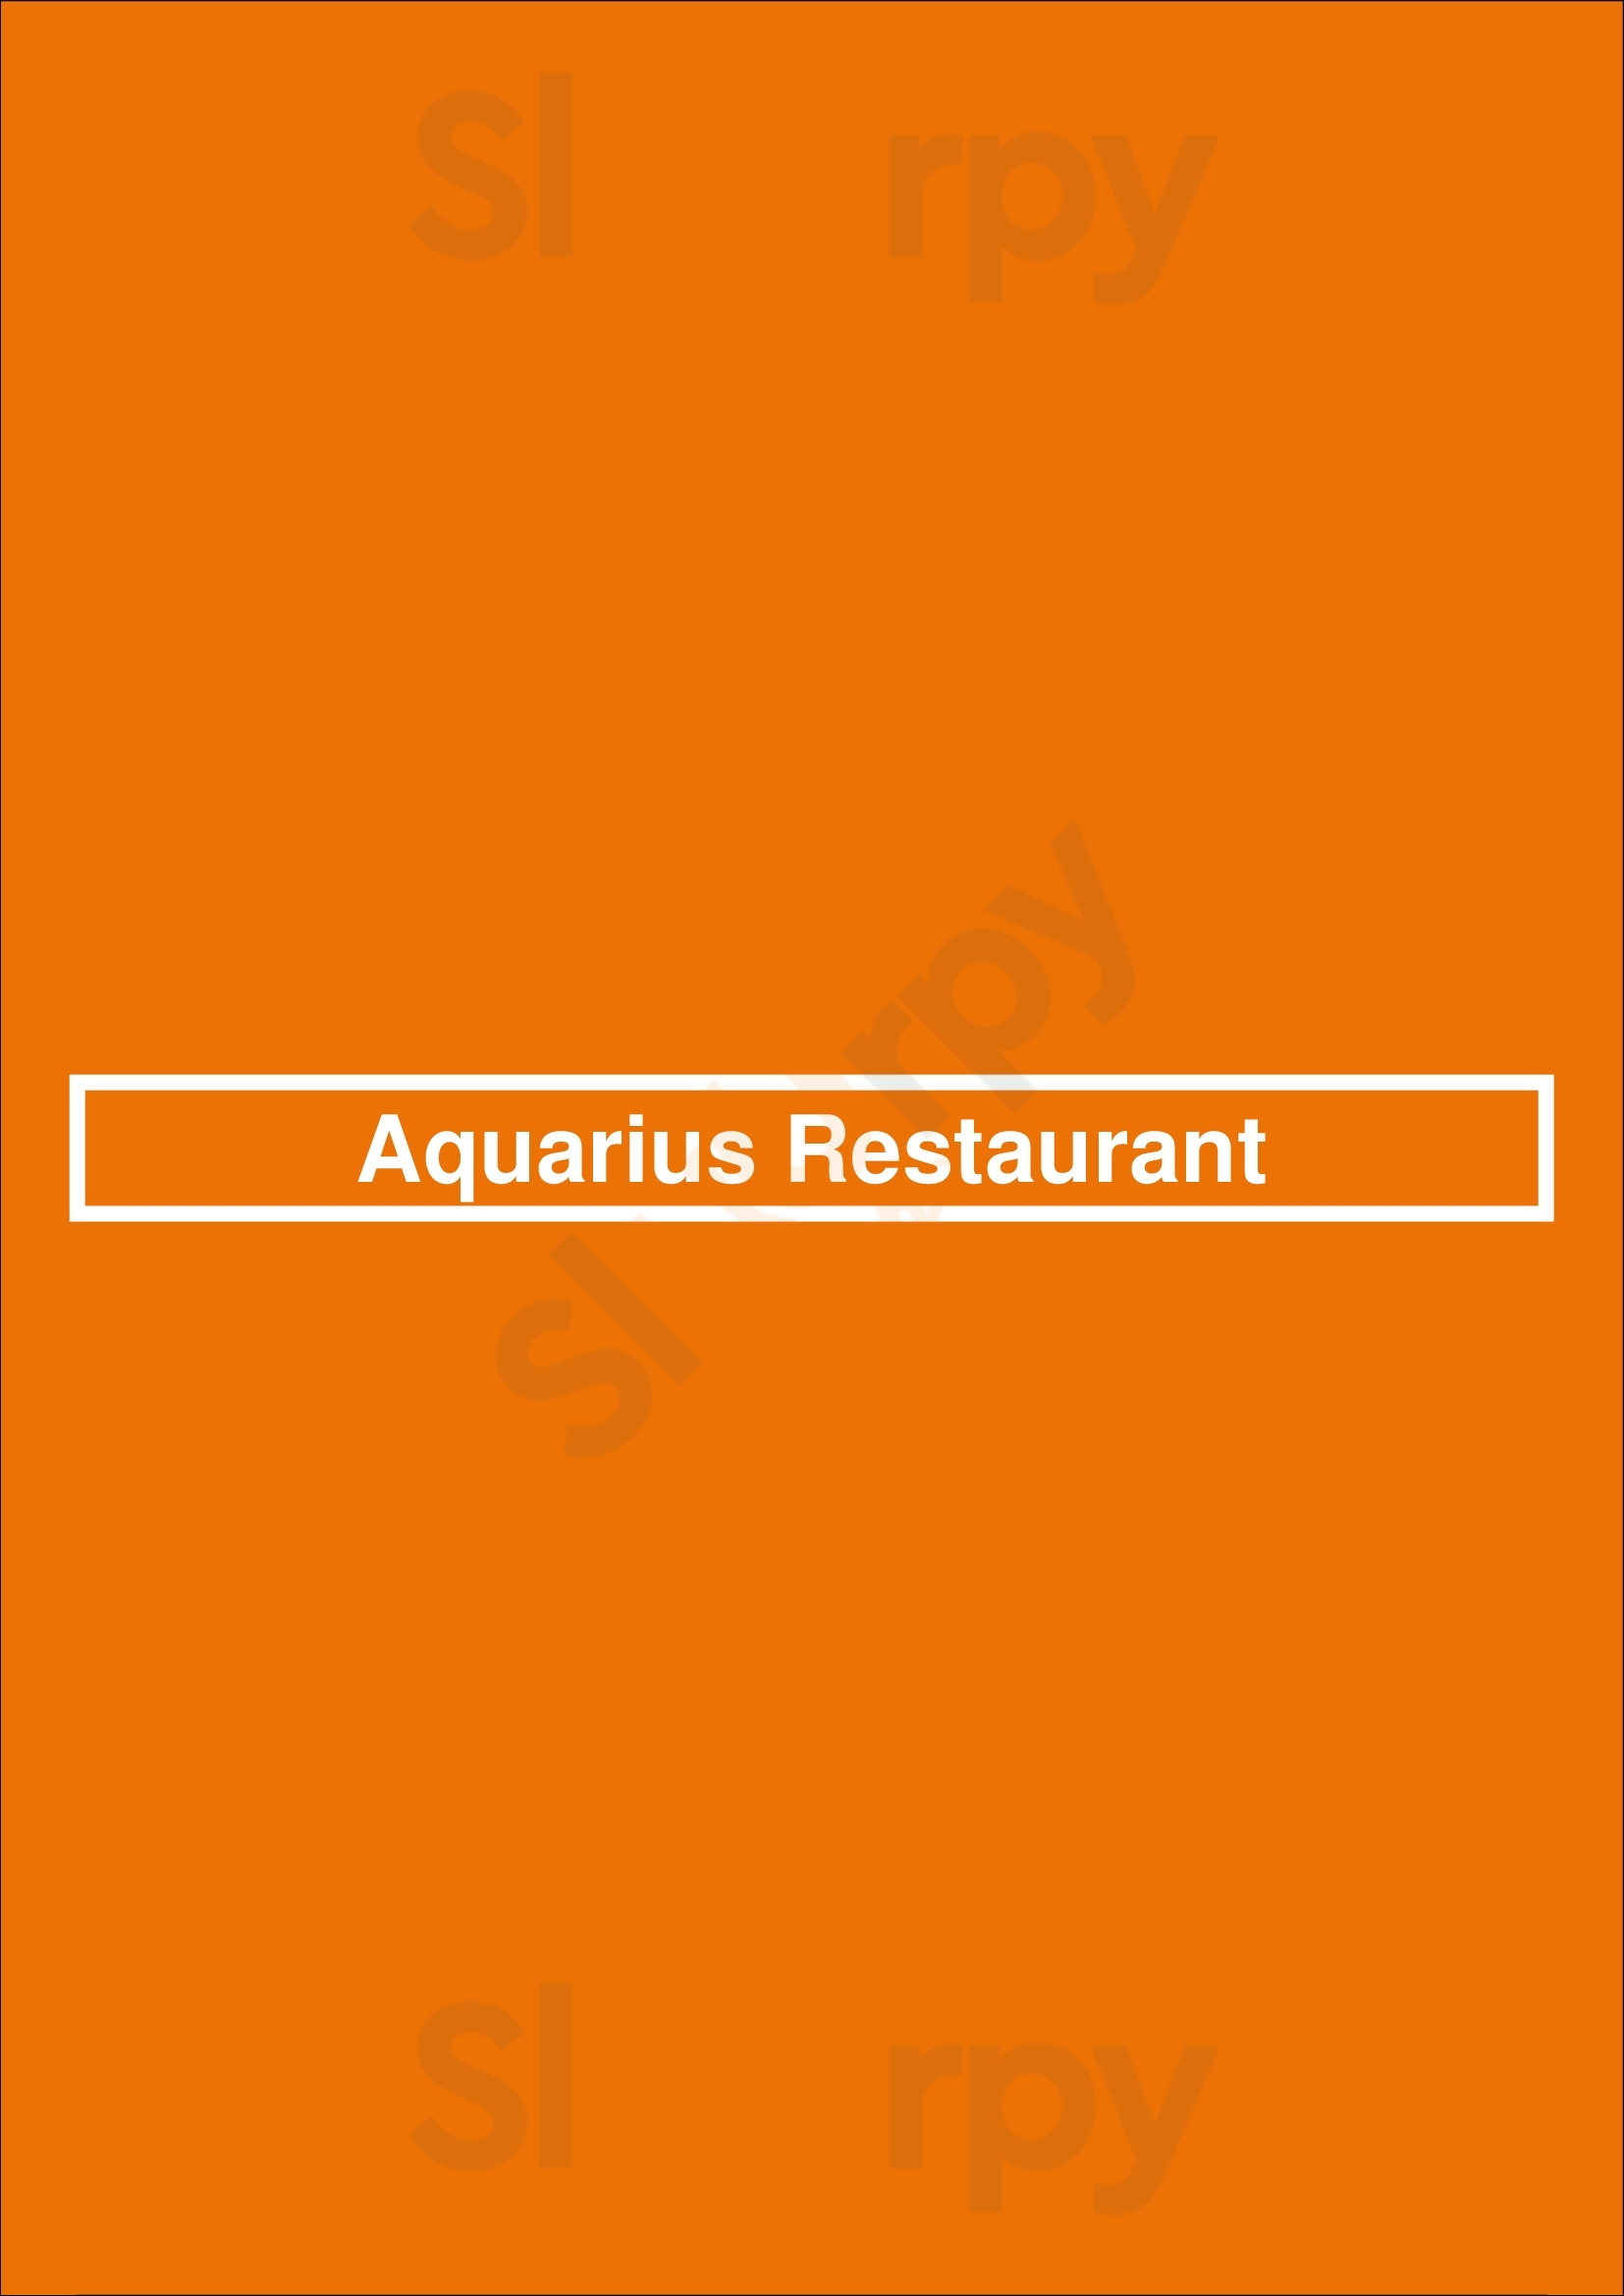 Aquarius Restaurant Praha Menu - 1